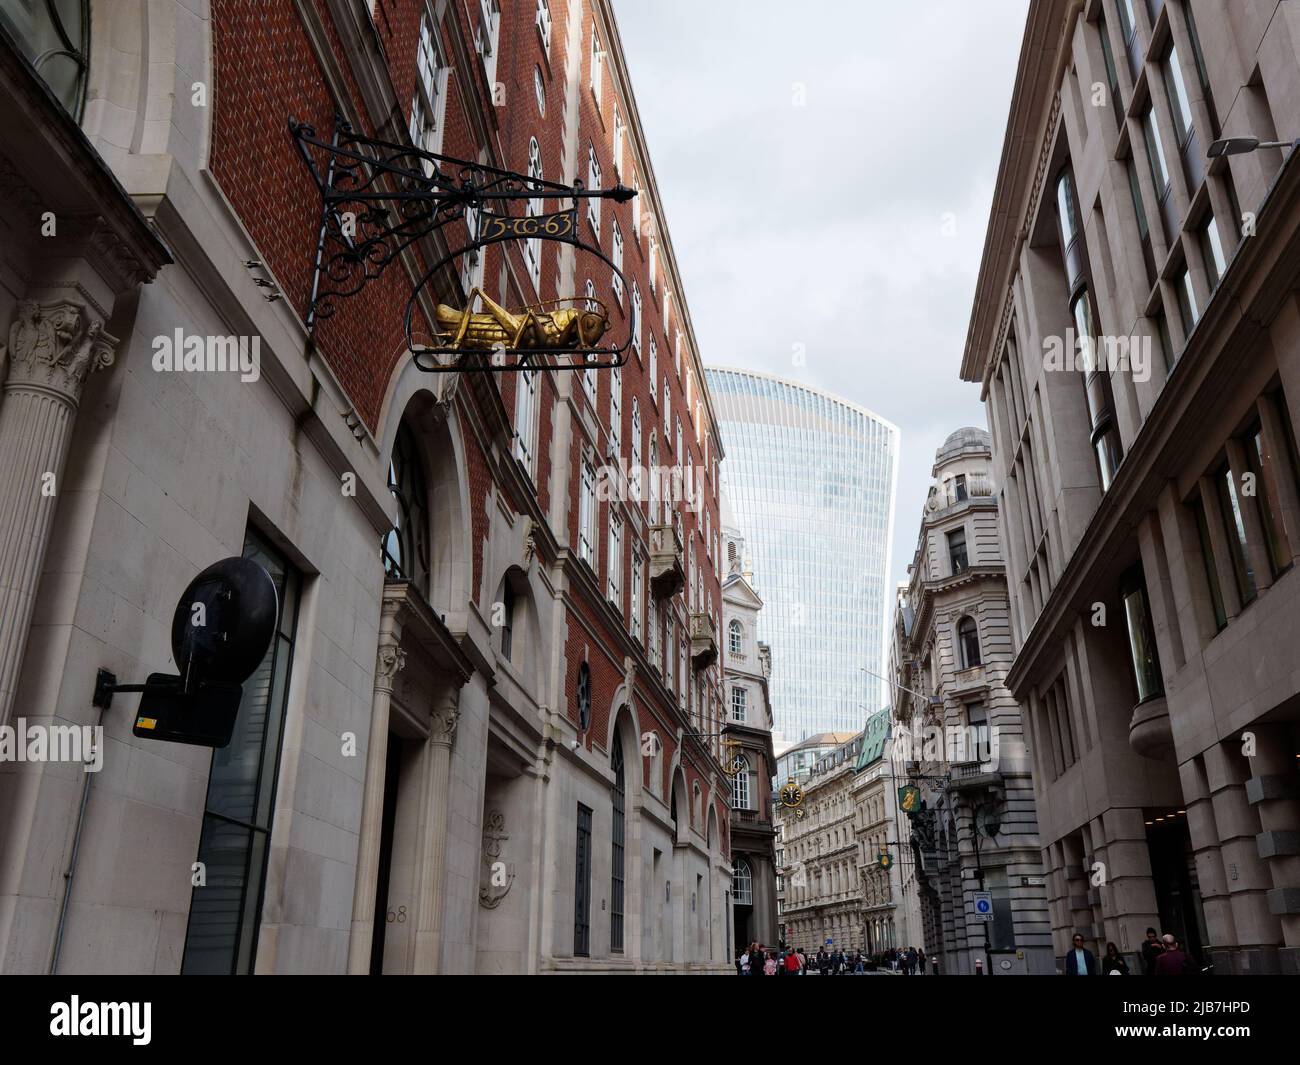 Lombard Street in Richtung Sky Garden. Der Grasshopper ist das Familienzeichen des Kaufmanns und Financers Thomas Gresham. City of London. Stockfoto